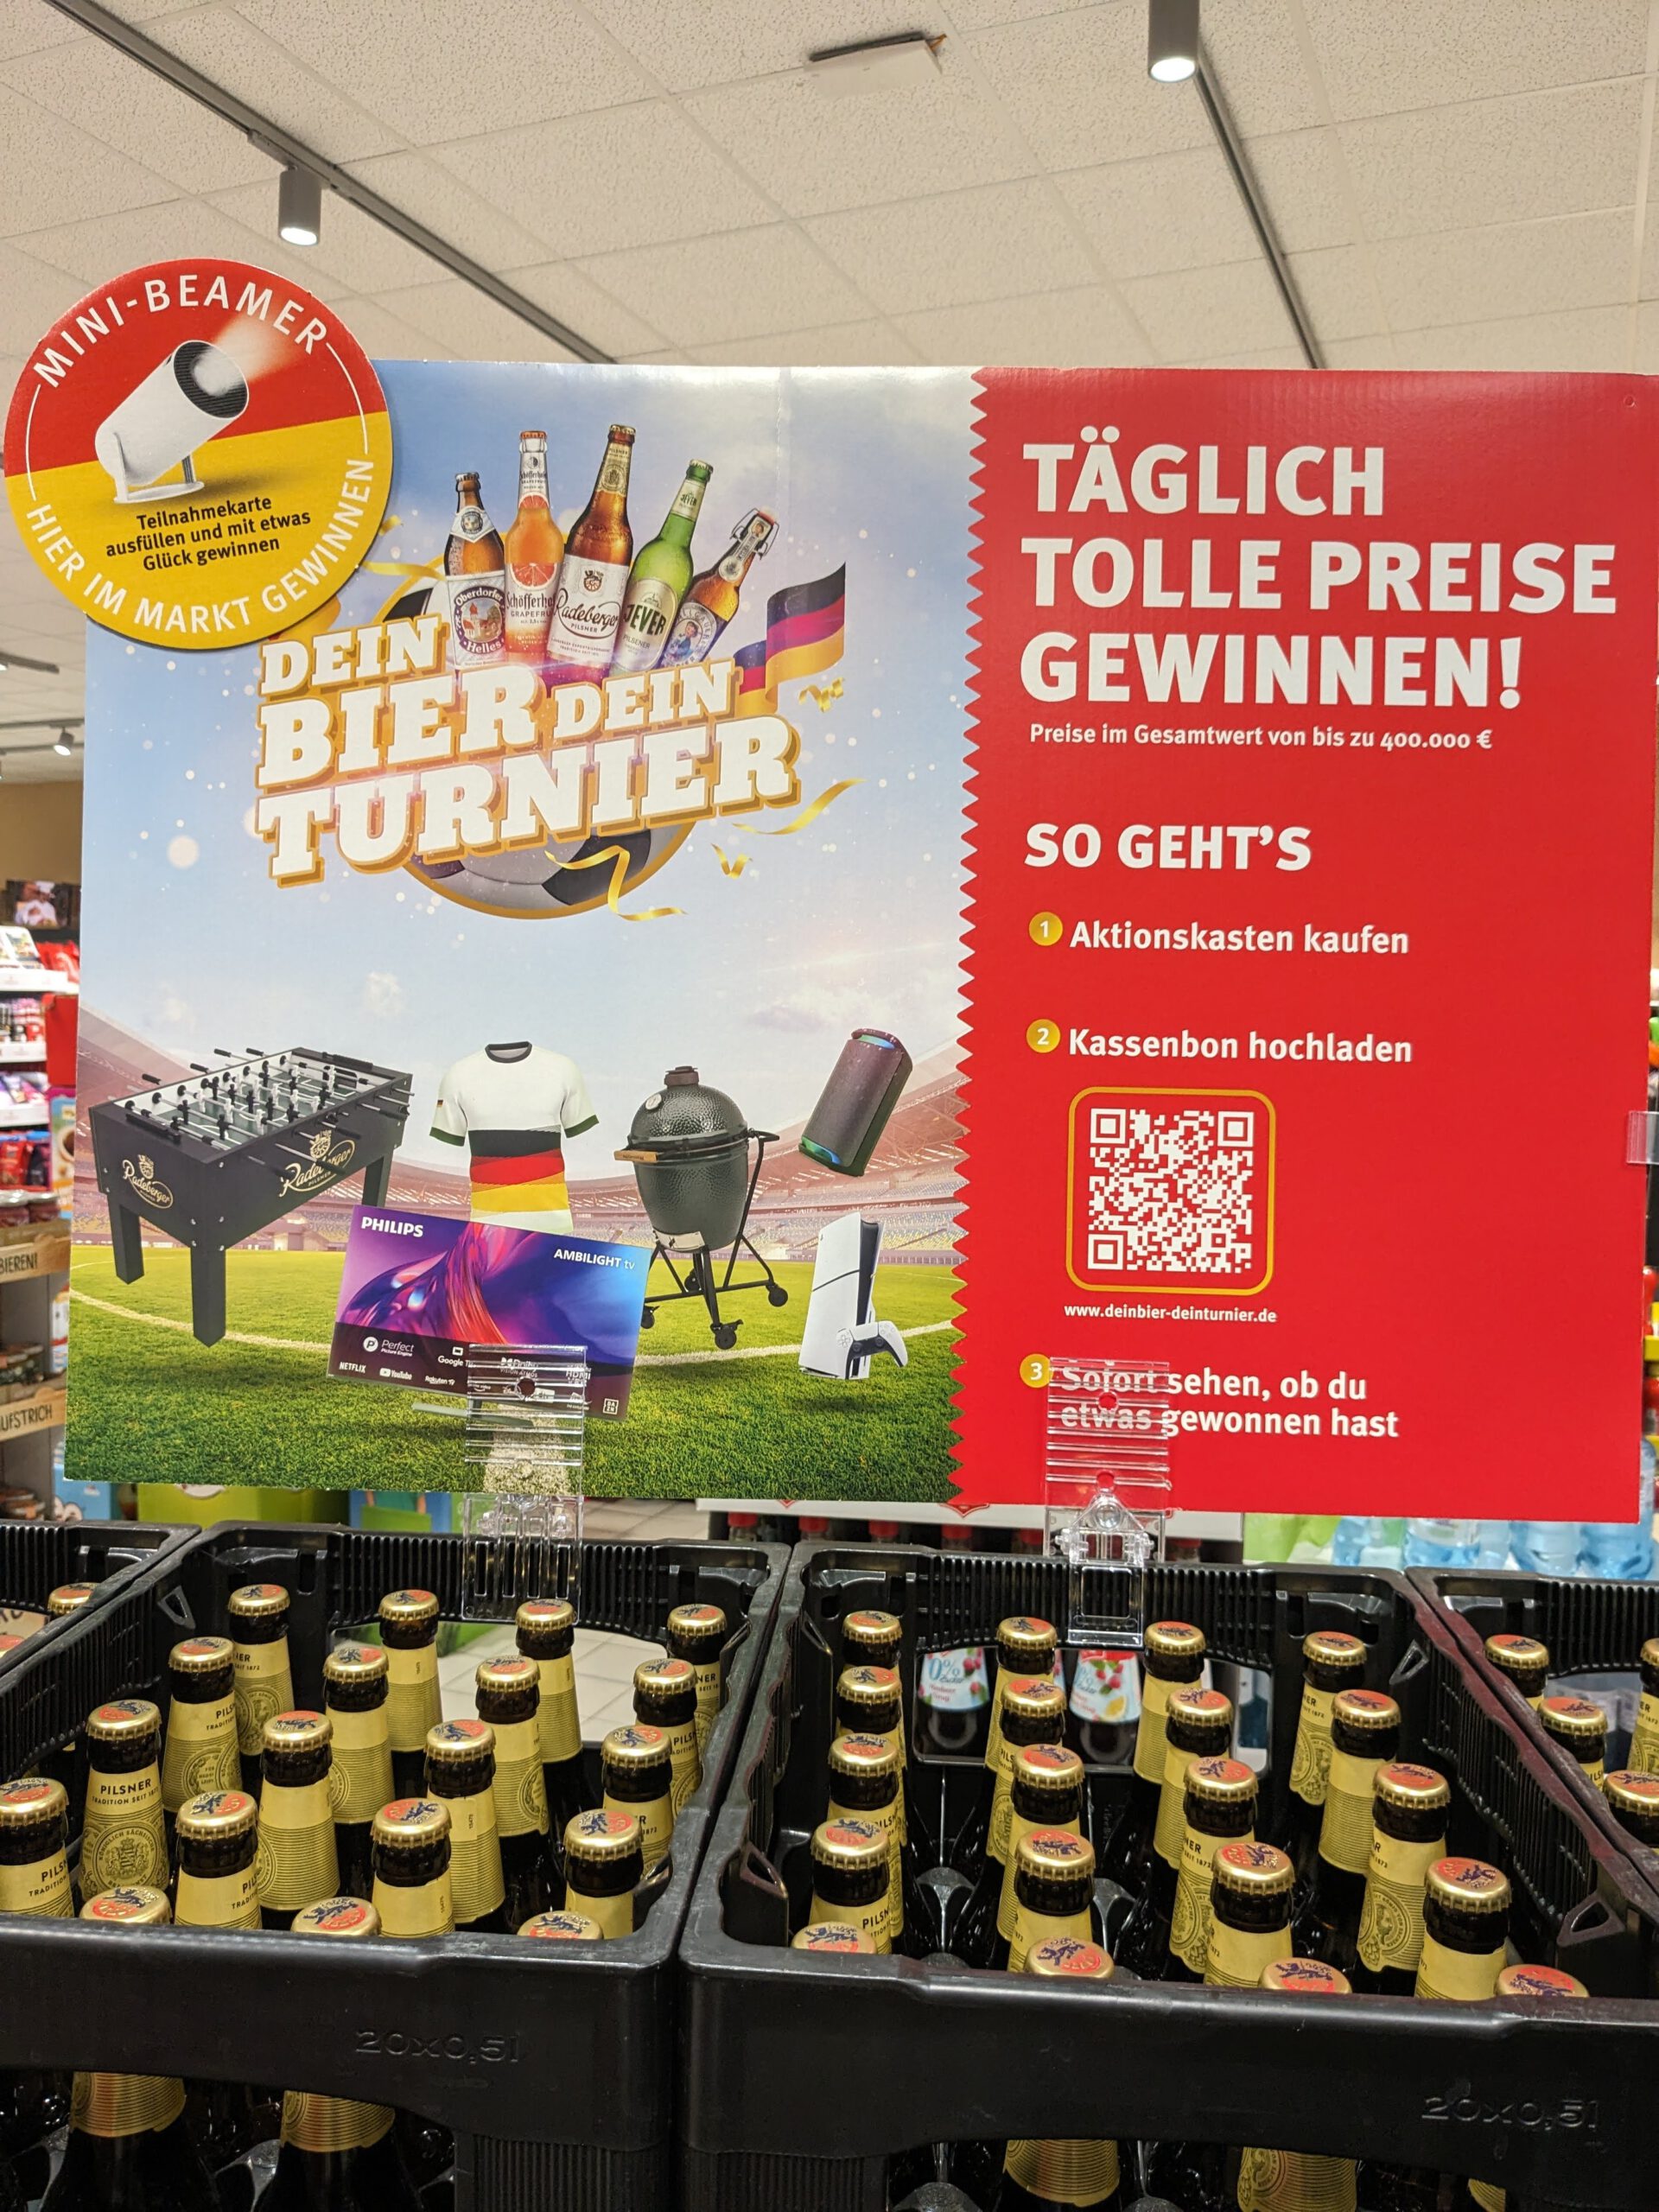 Dein Bier, dein Turnier: Preise für insgesamt 400.000 Euro gewinnen - Kassenbon hochladen